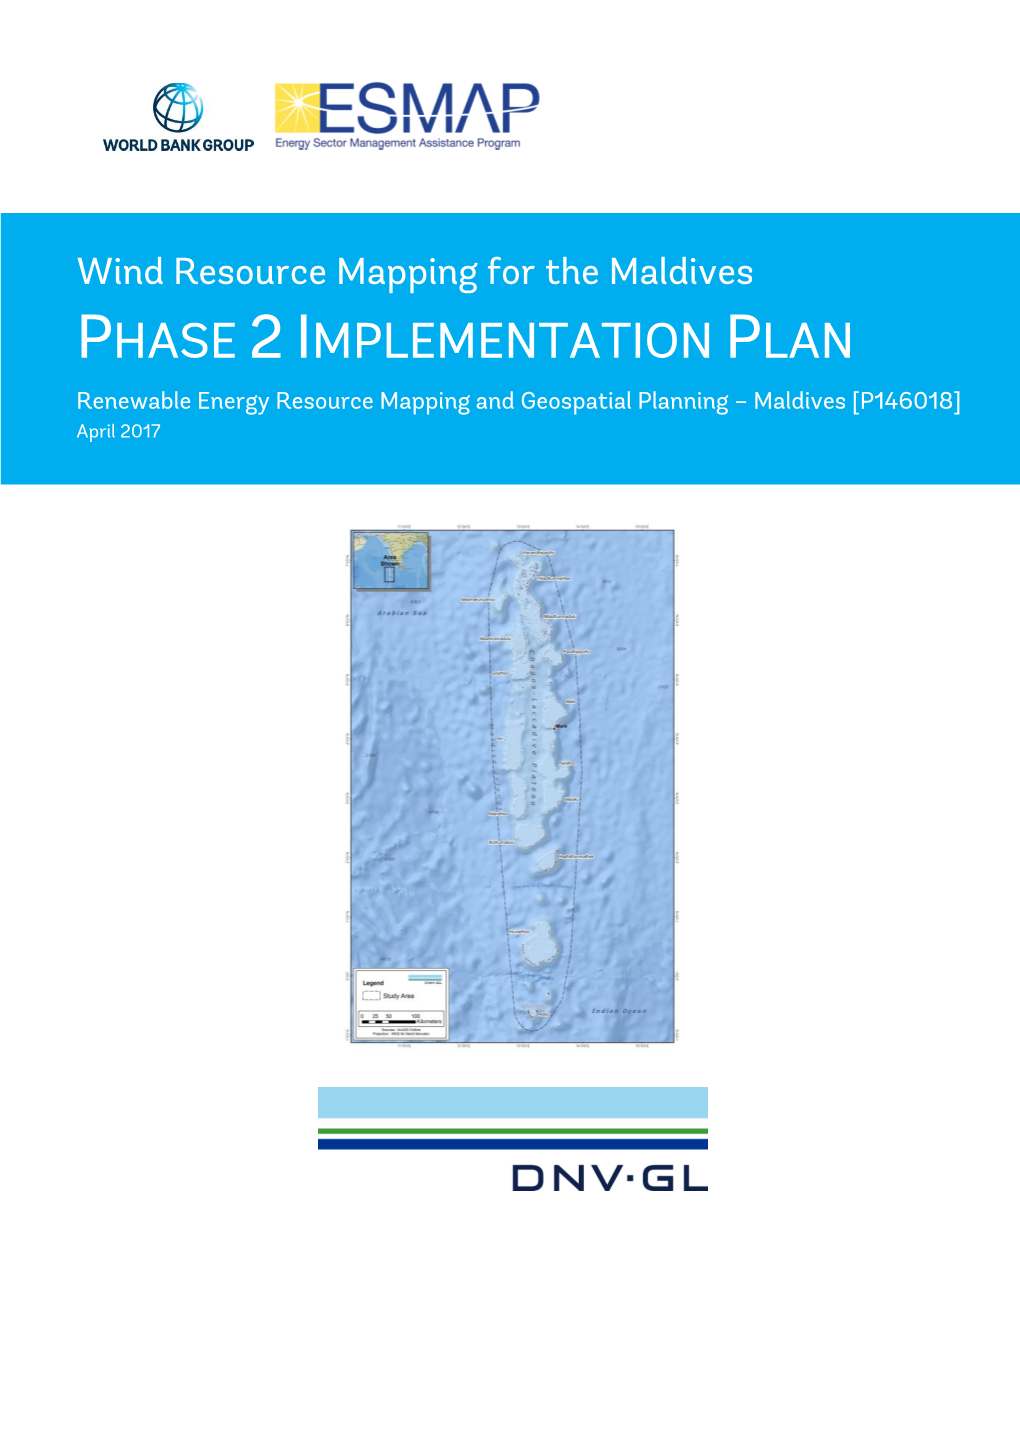 702909-AUME-R-03 Maldives Implementation Plan